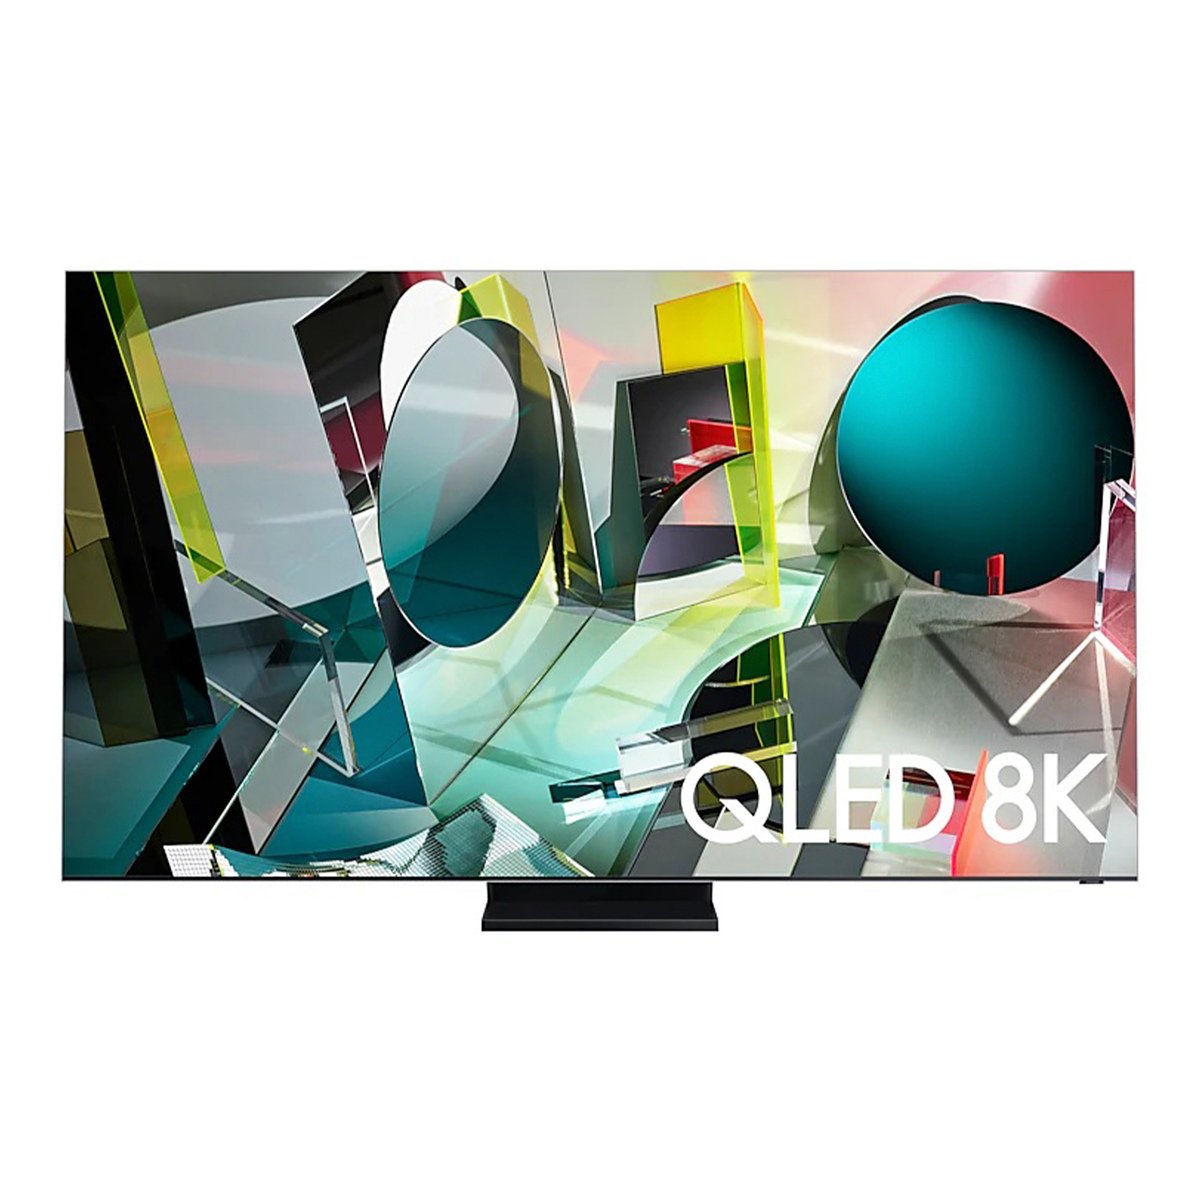 Samsung QLED TV QA75Q950TSUXZN 75Inches Series(2020)